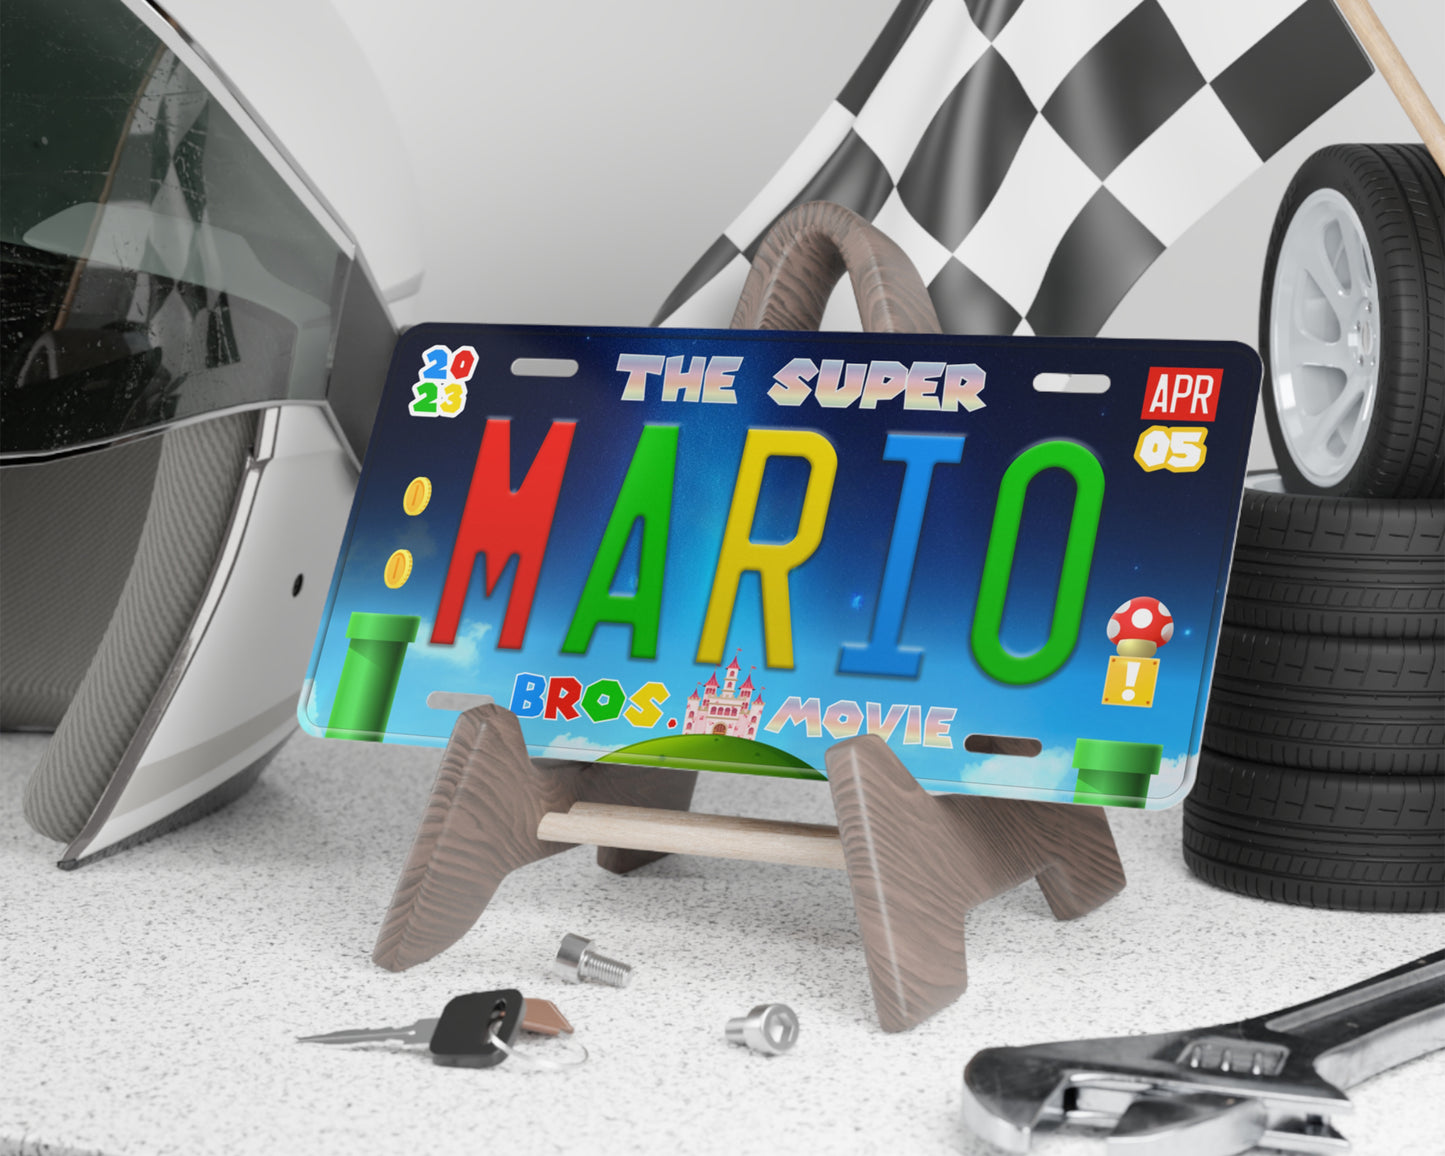 Mario Movie (2023) movie license plate